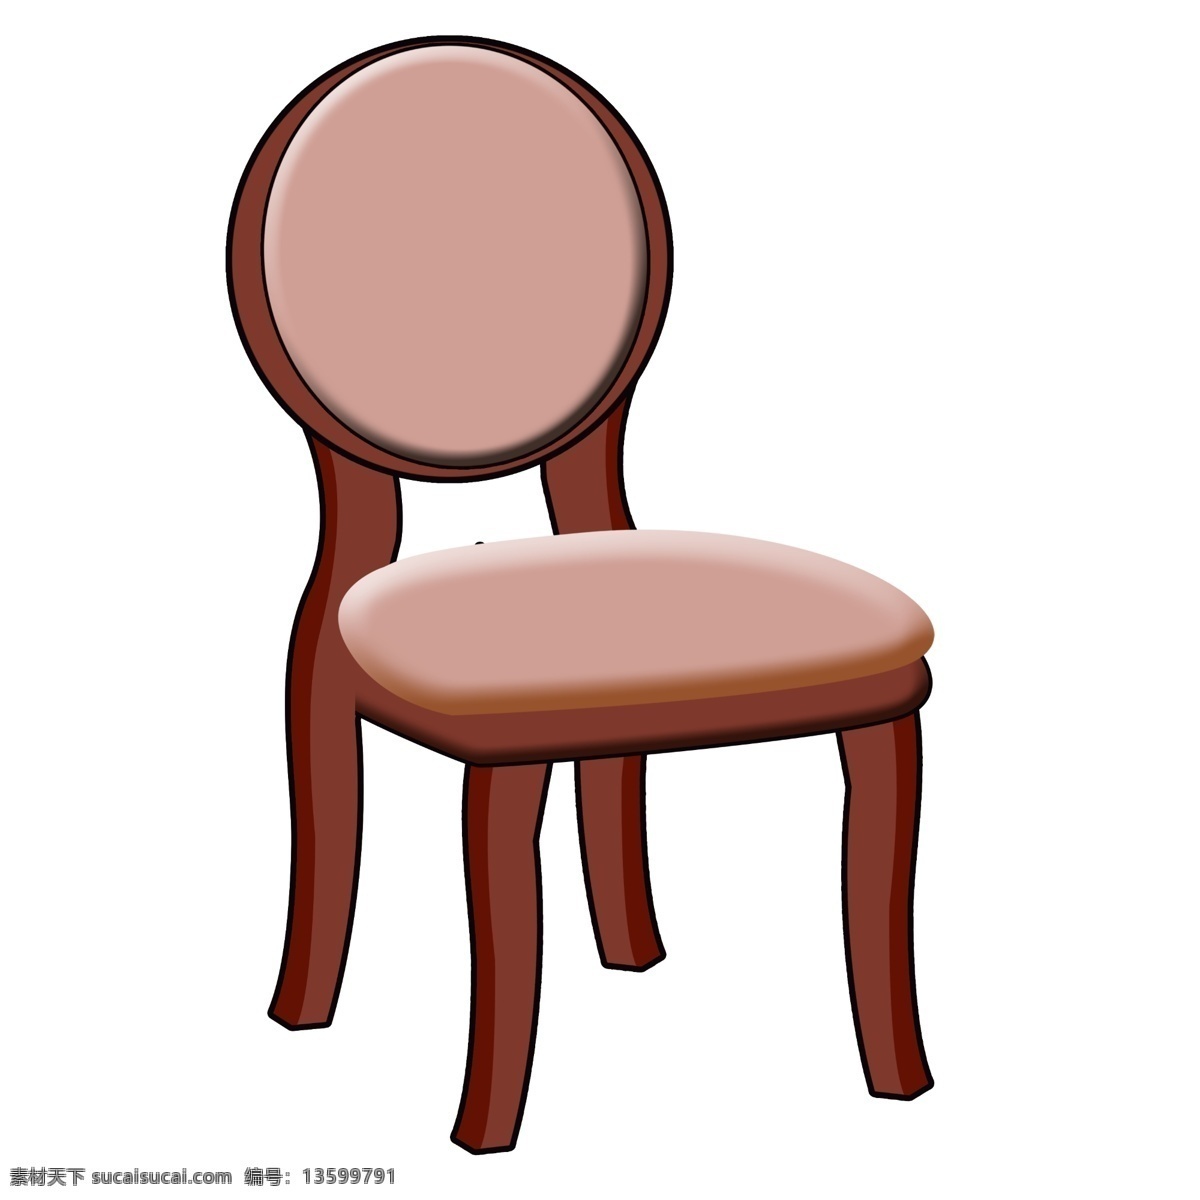 红色 椅子 装饰 插画 红色的椅子 漂亮的椅子 家具椅子 木头椅子 椅子装饰 椅子插画 立体椅子